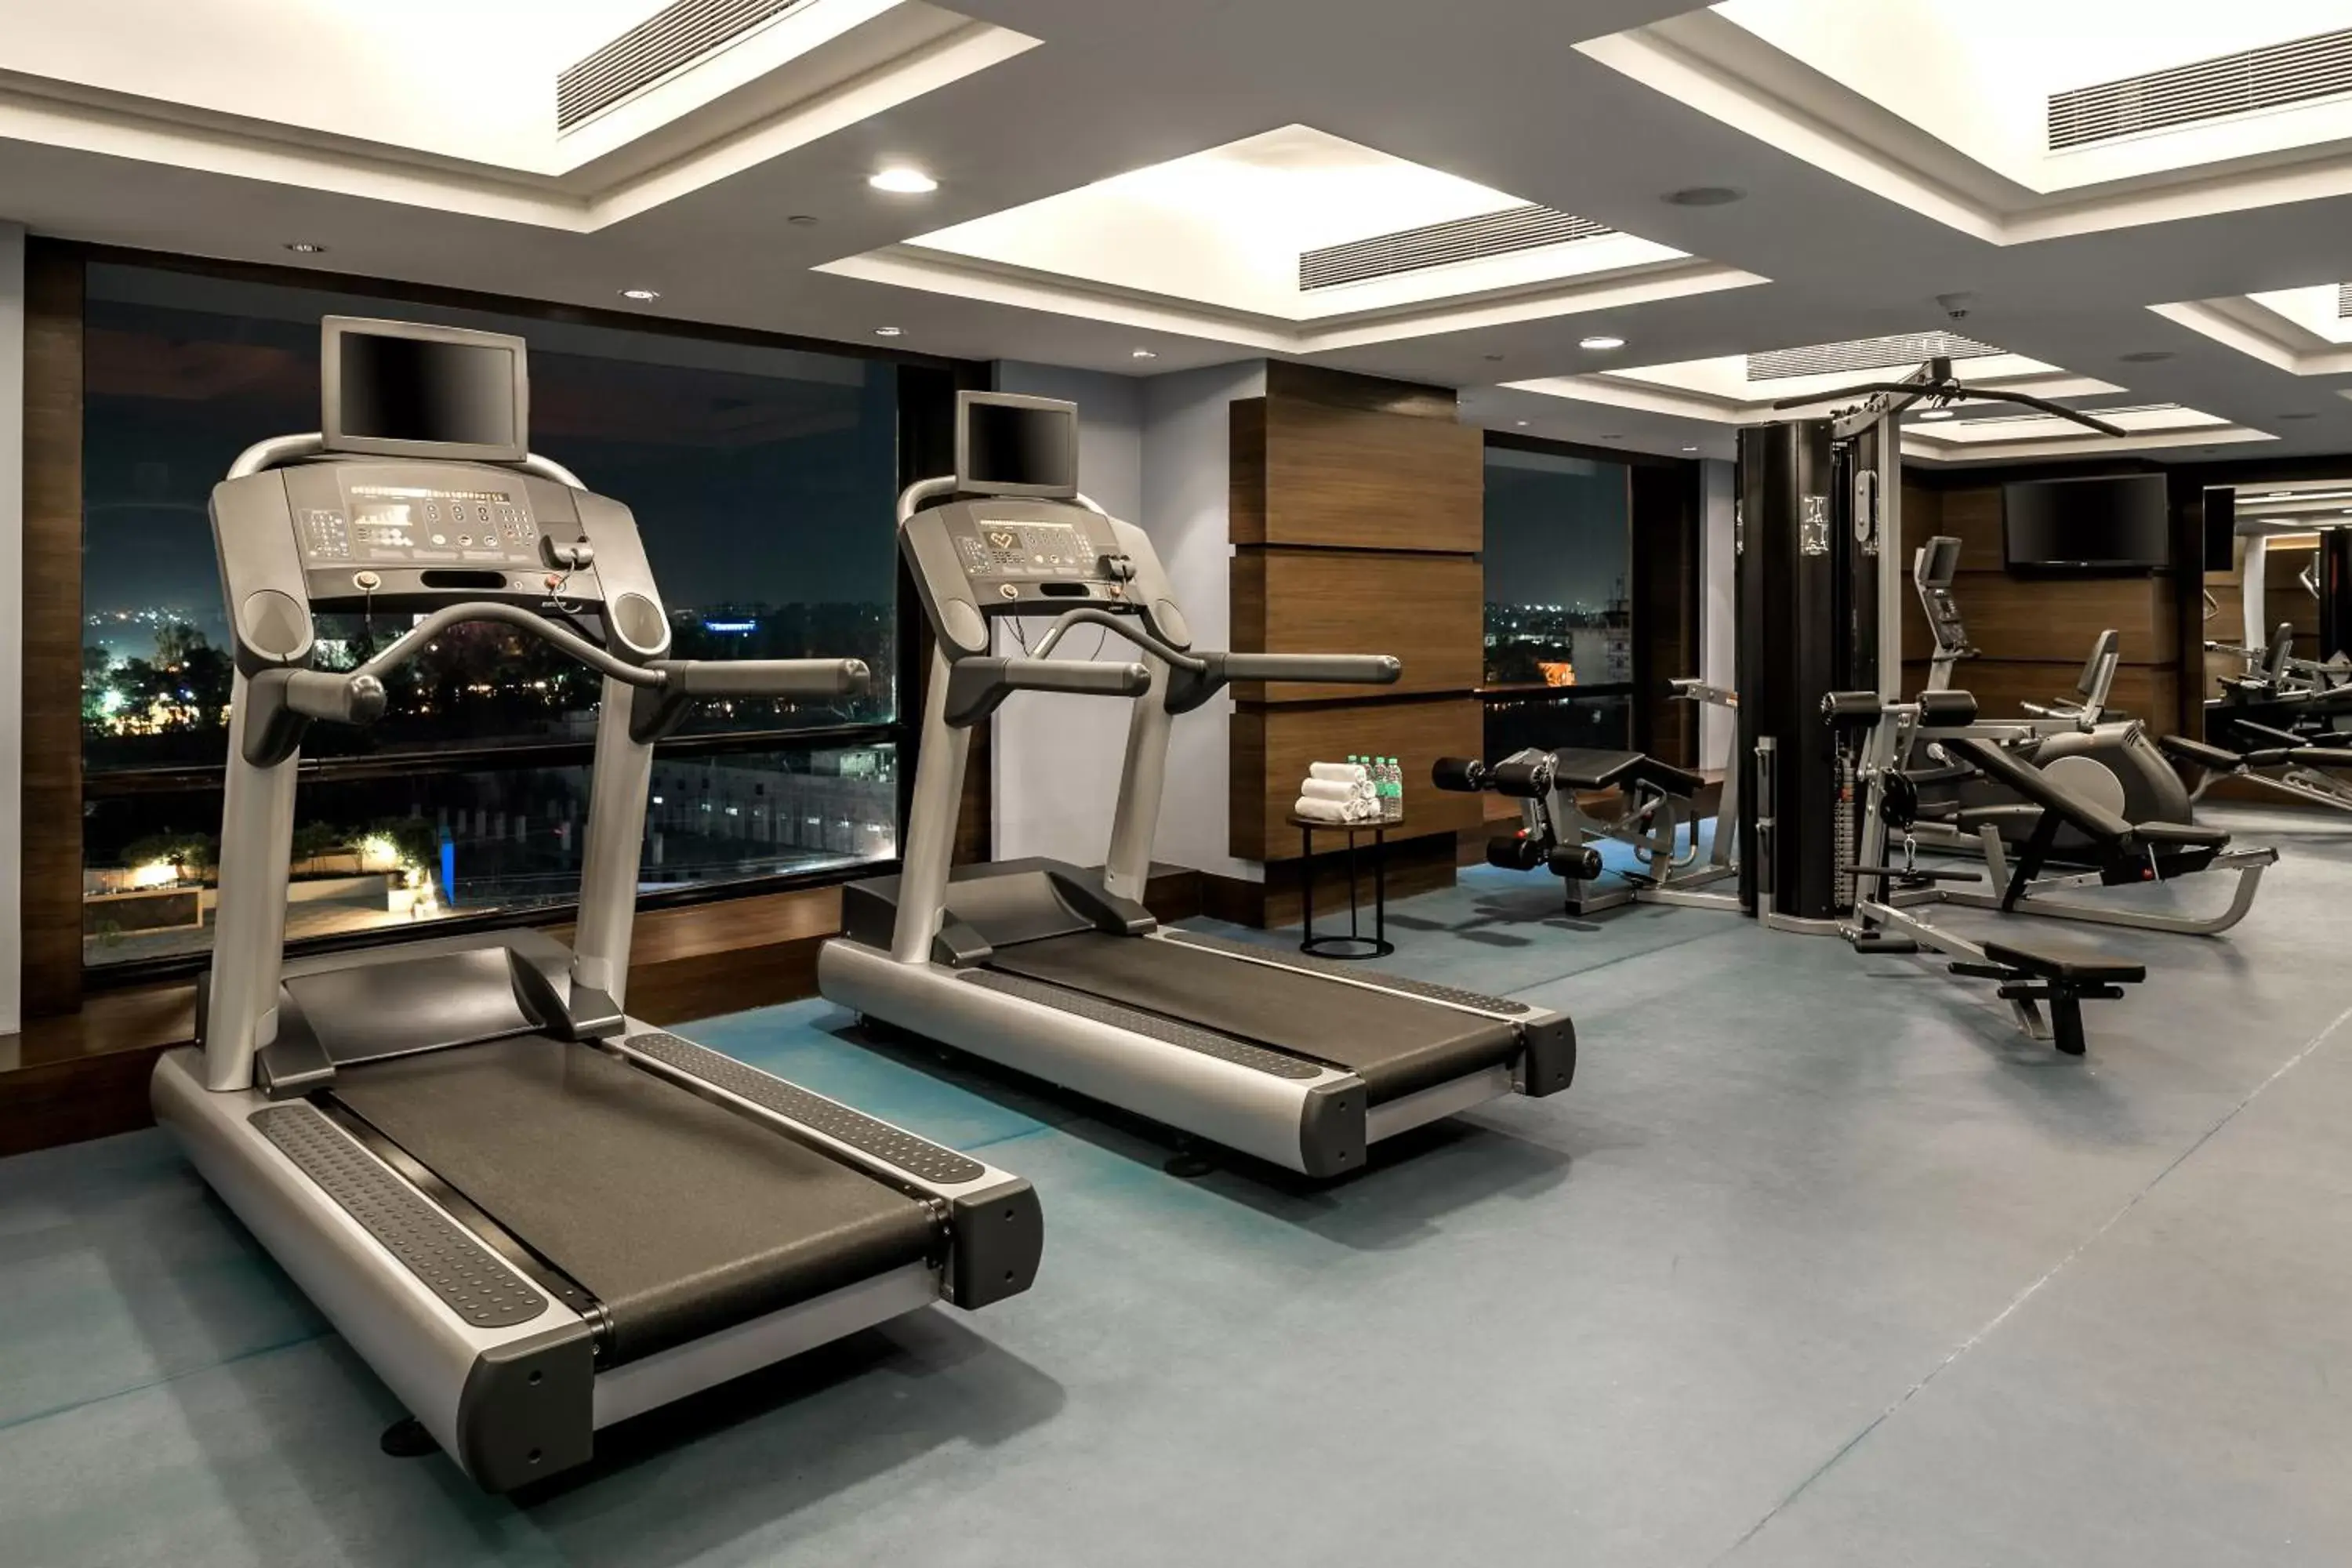 Fitness centre/facilities, Fitness Center/Facilities in Hyatt Raipur